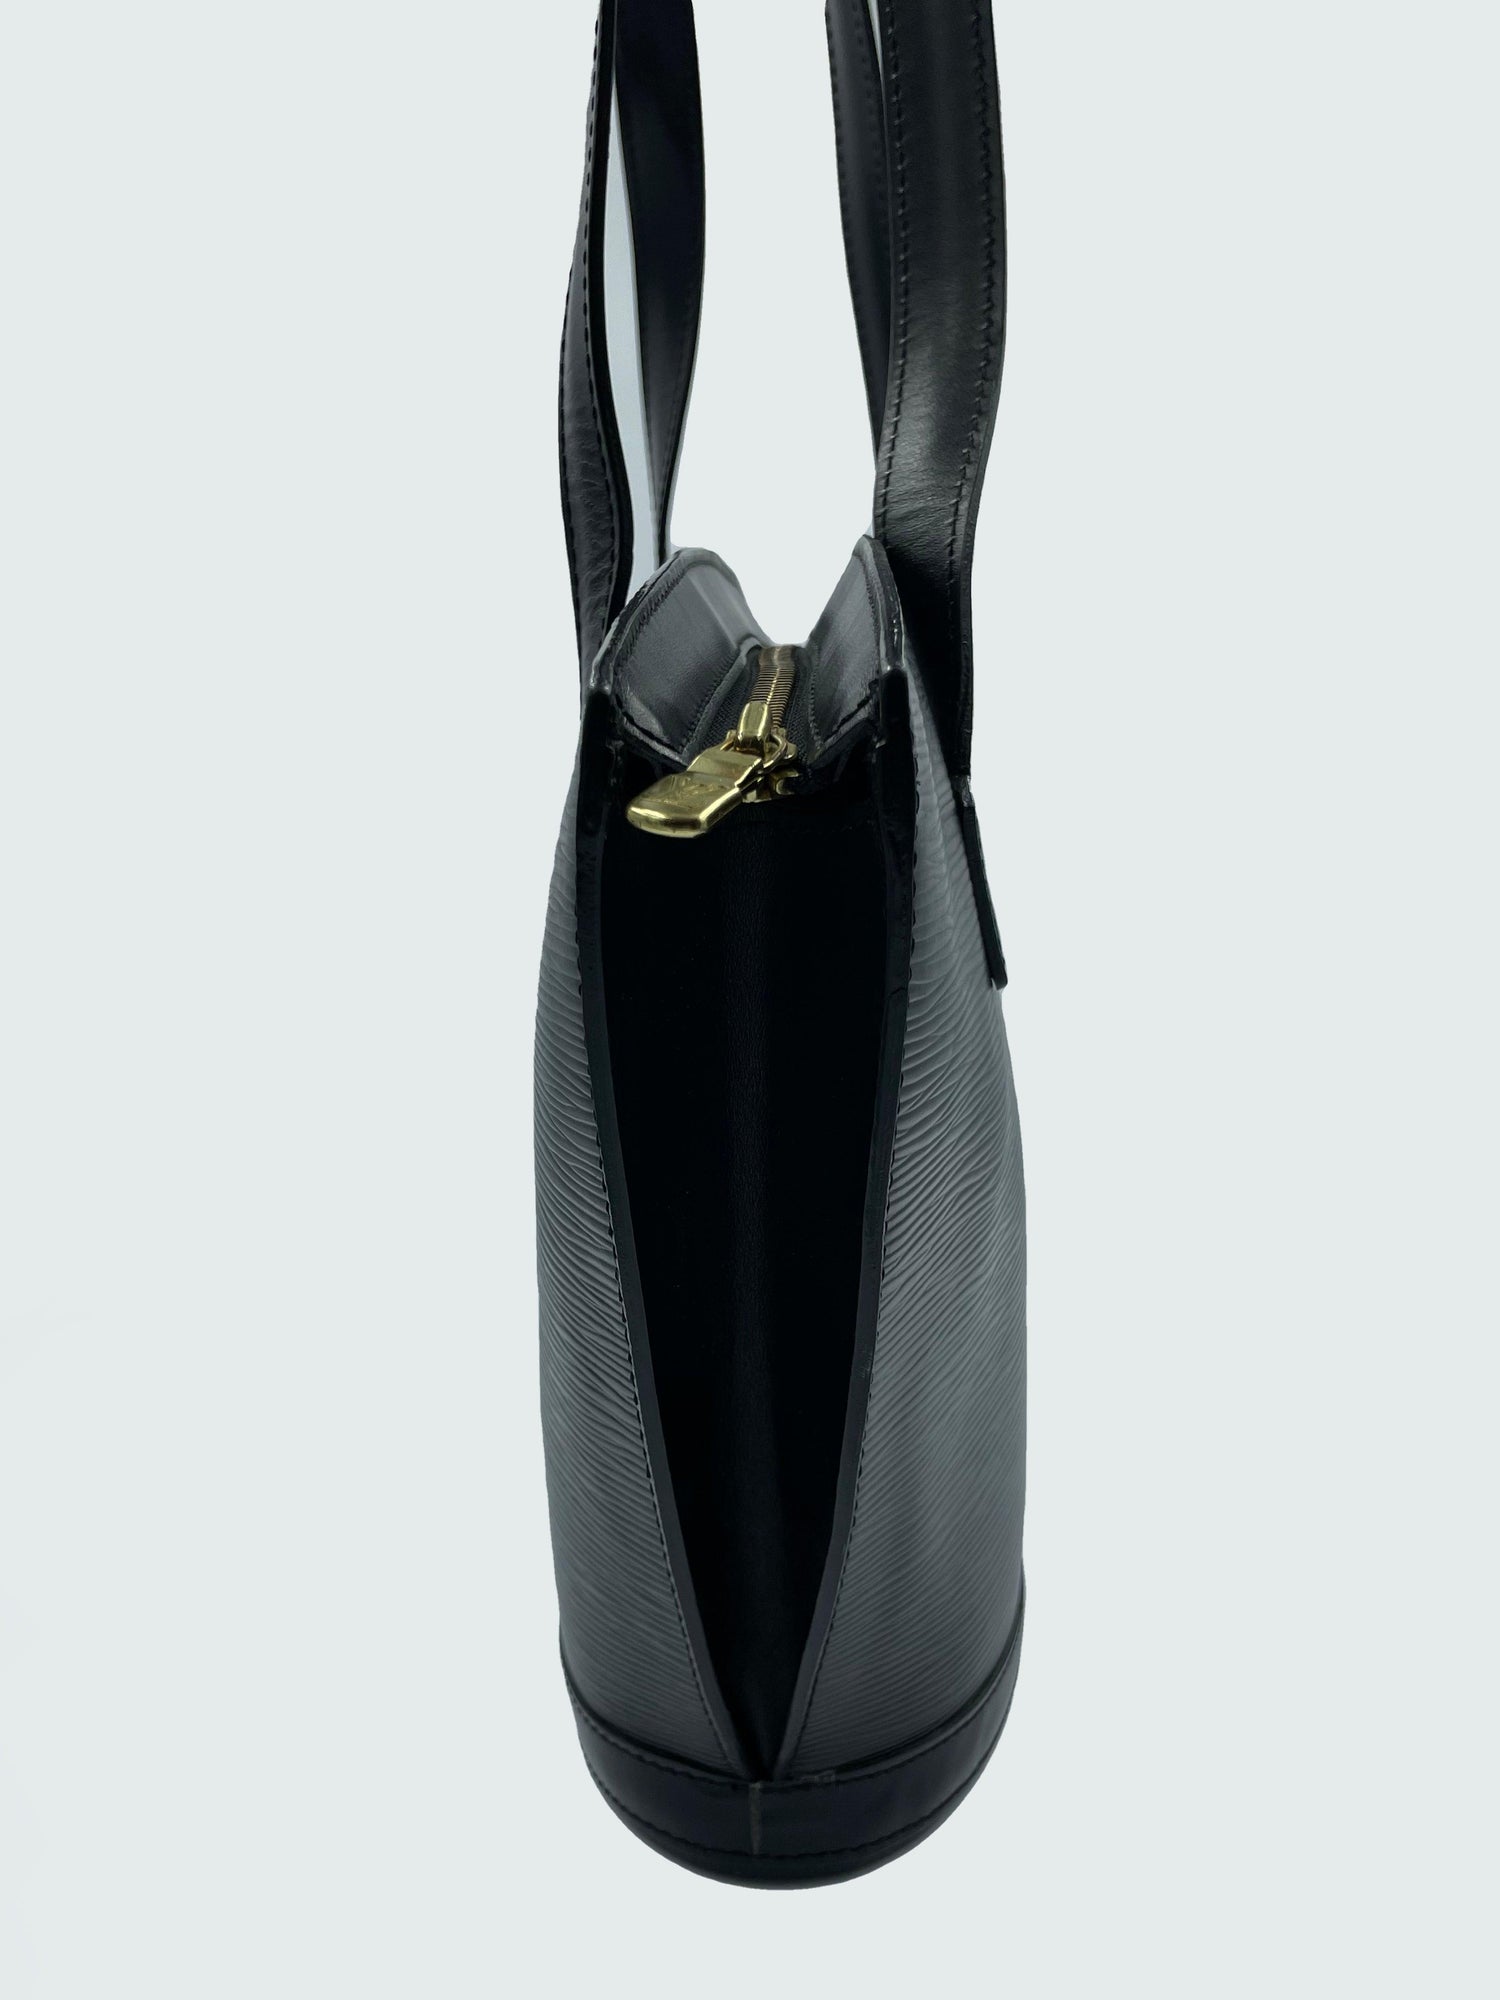 Louis Vuitton "Epi Saint Jacques PM" - Second Nature Boutique